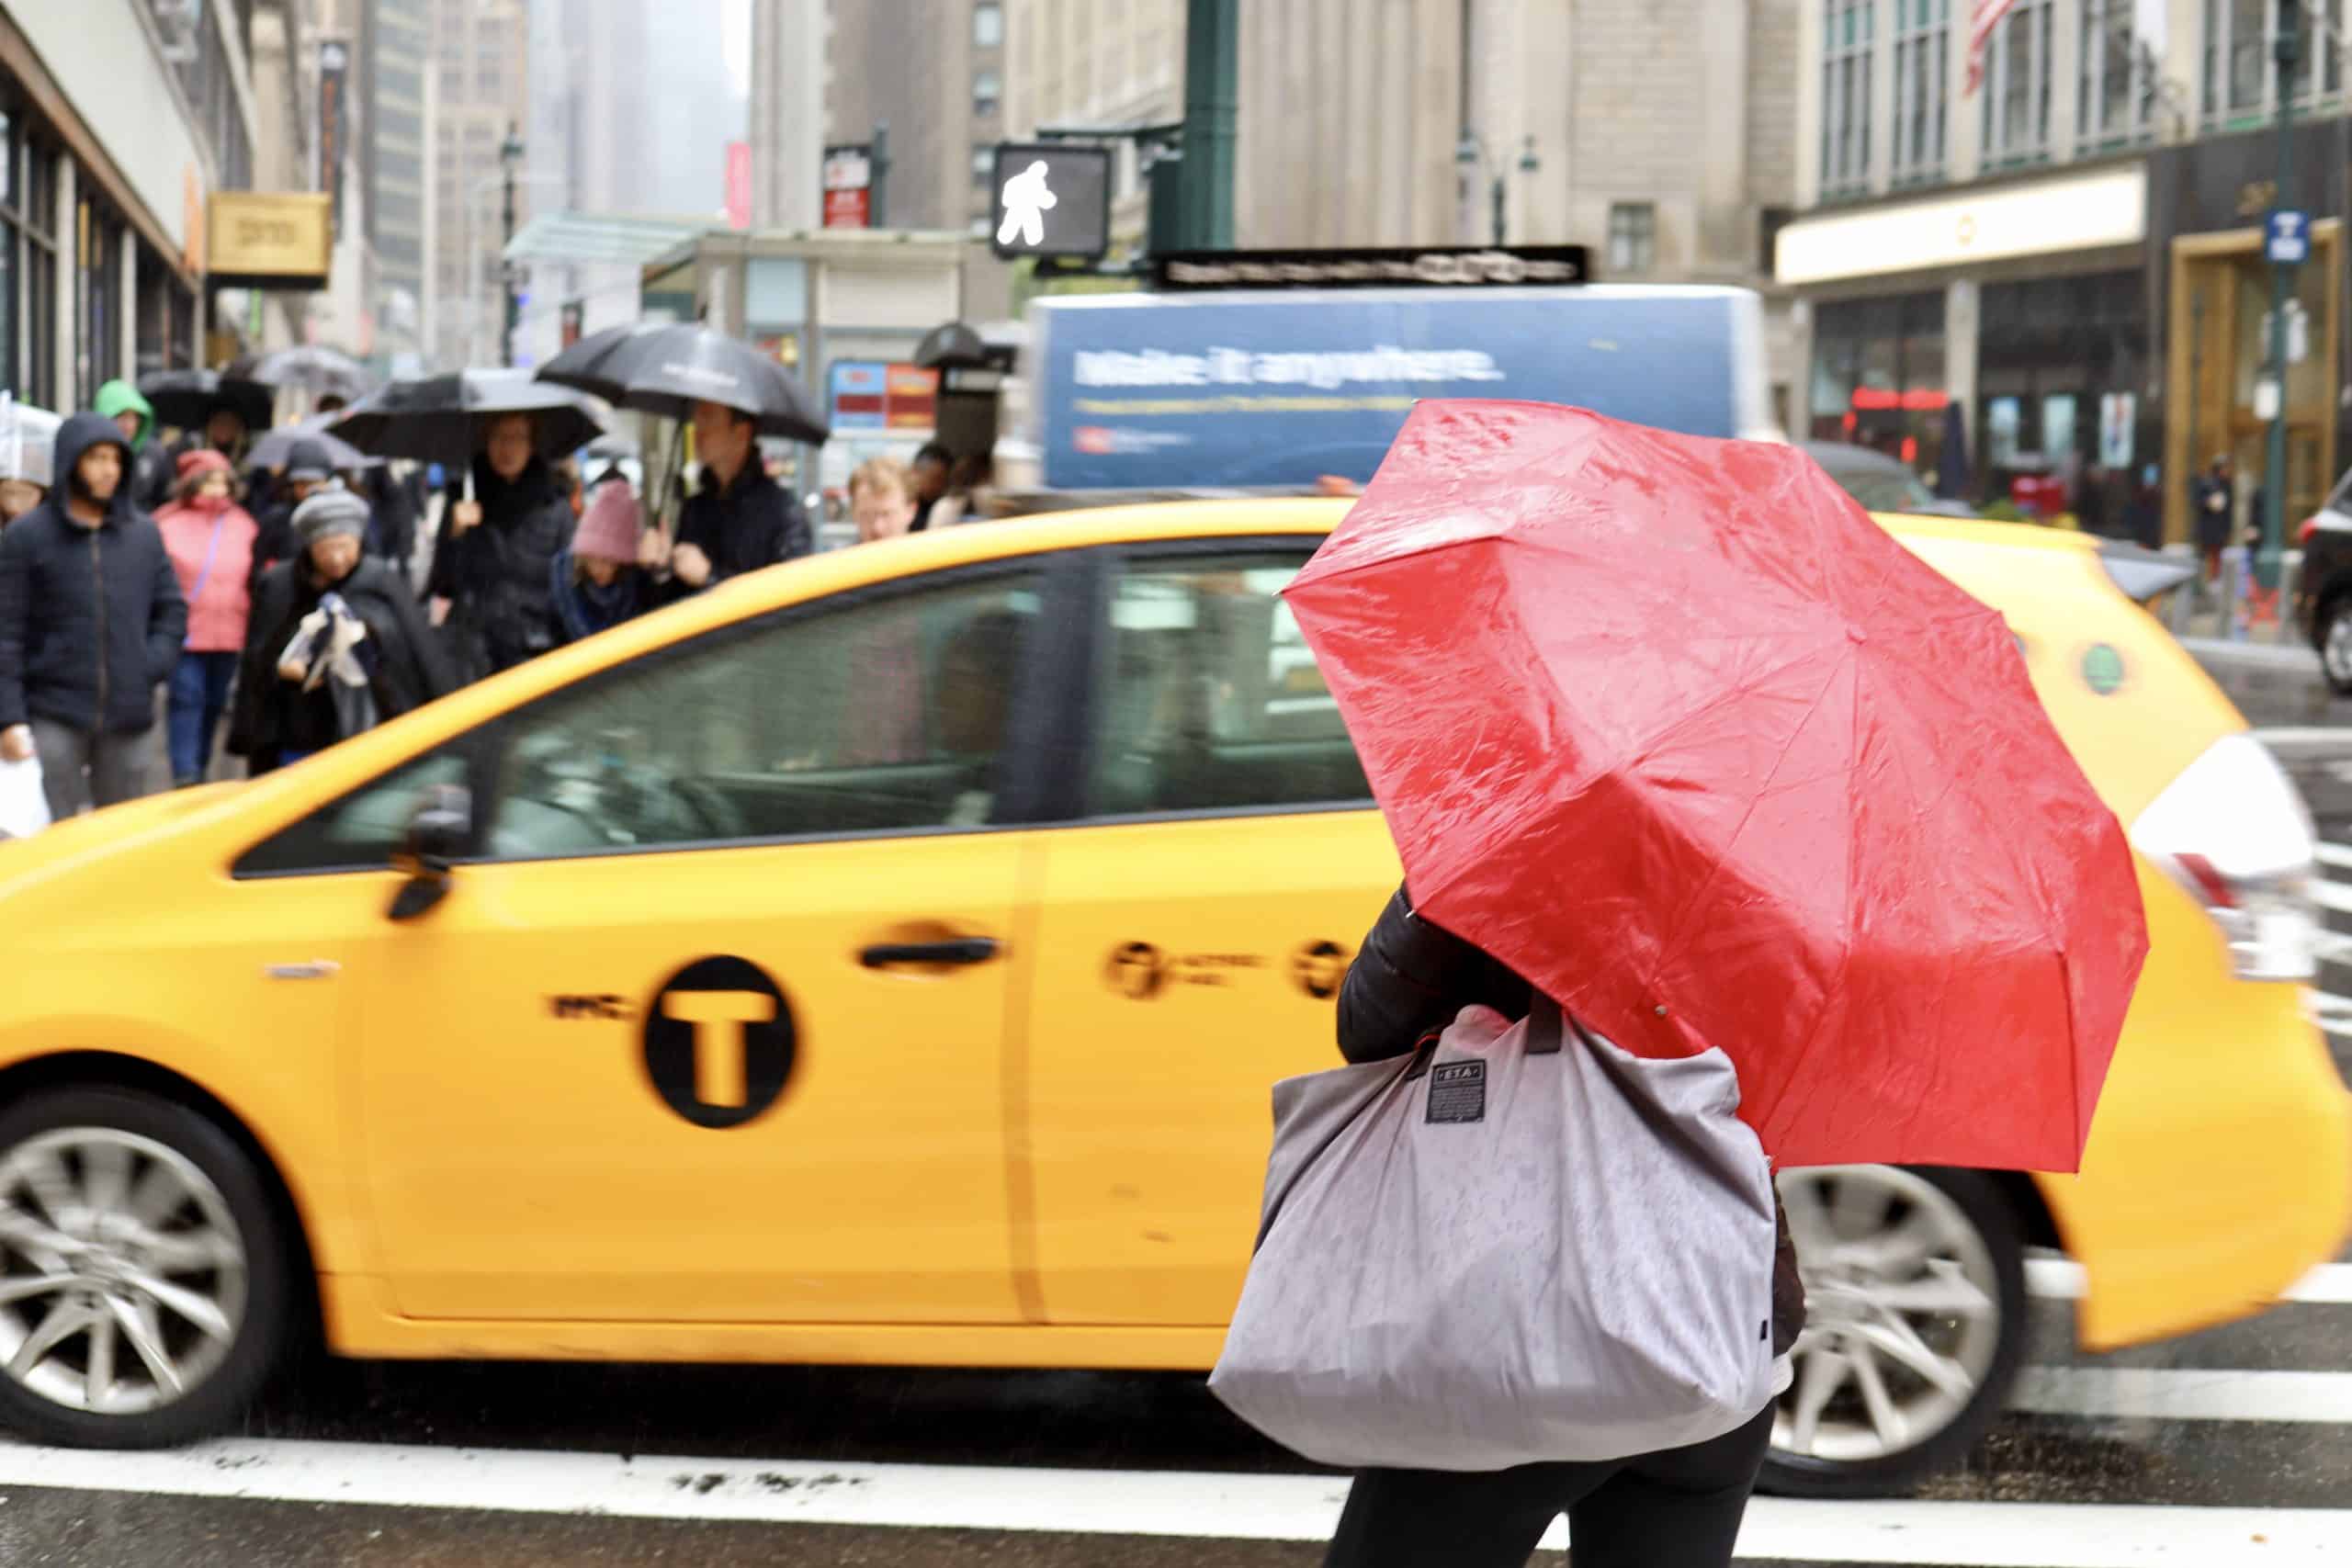 New York bei Regen? 15 Ideen für Schlechtwettertage in NYC